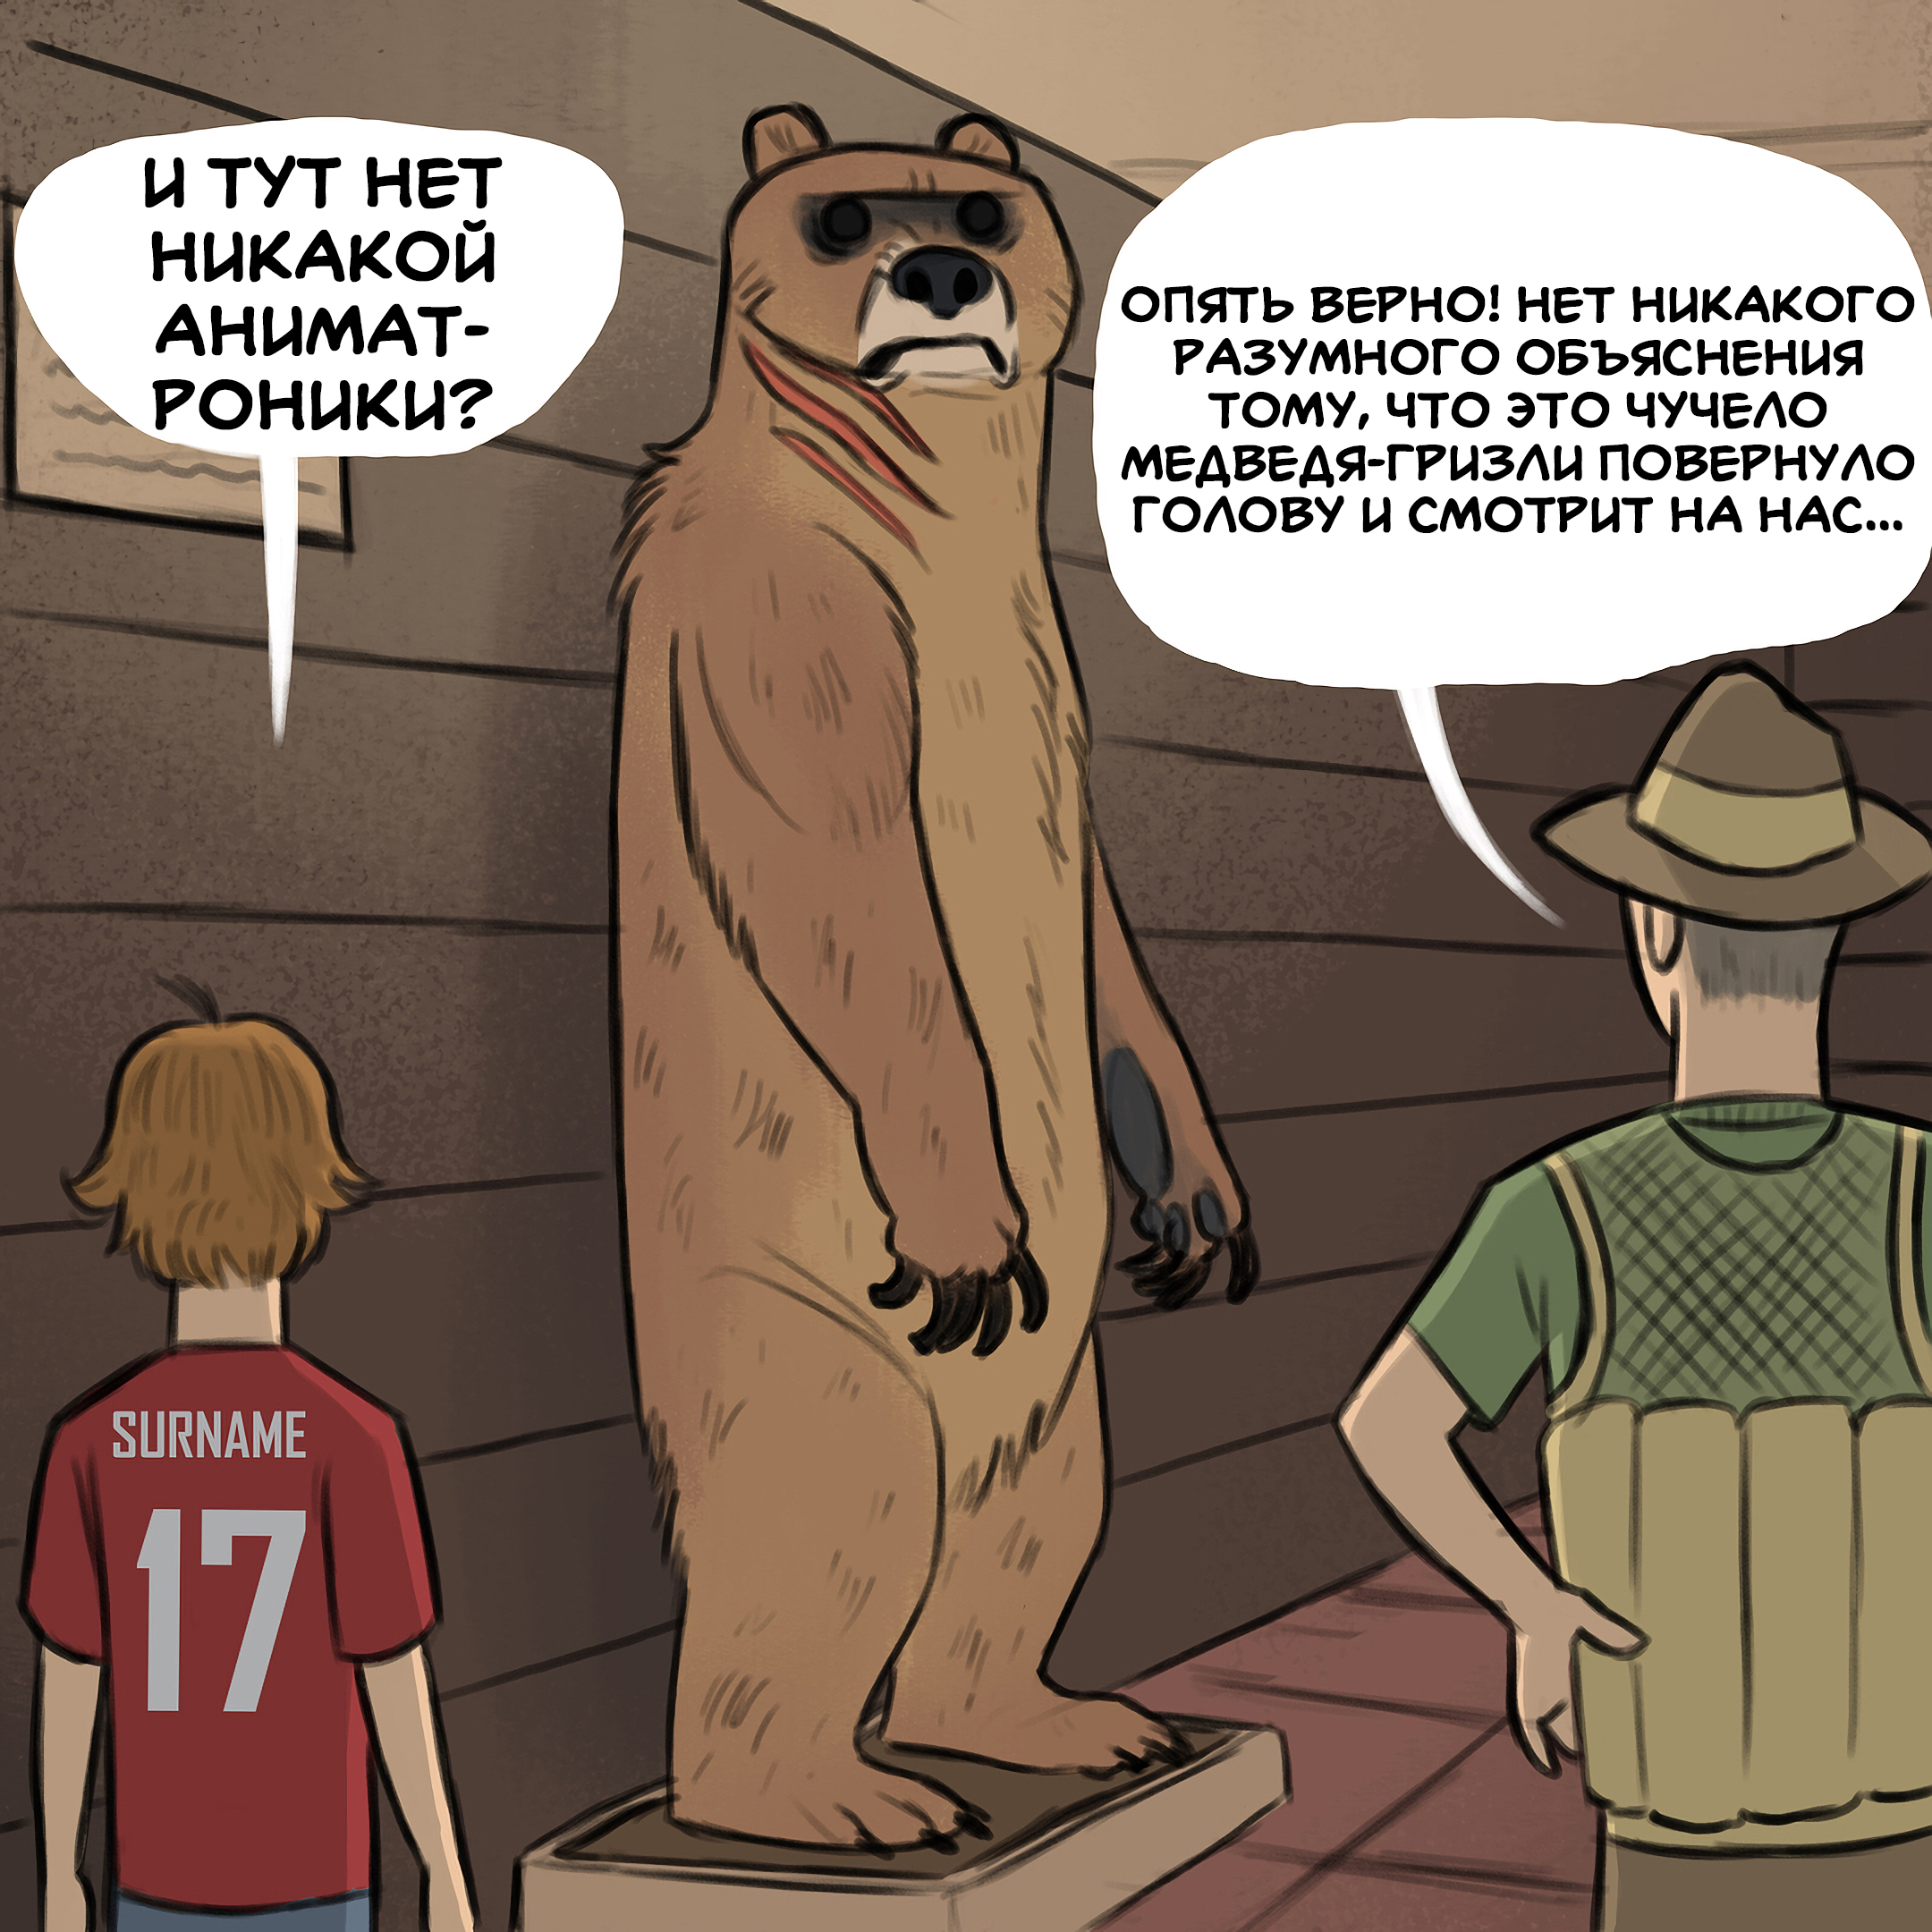 Медведь комикс